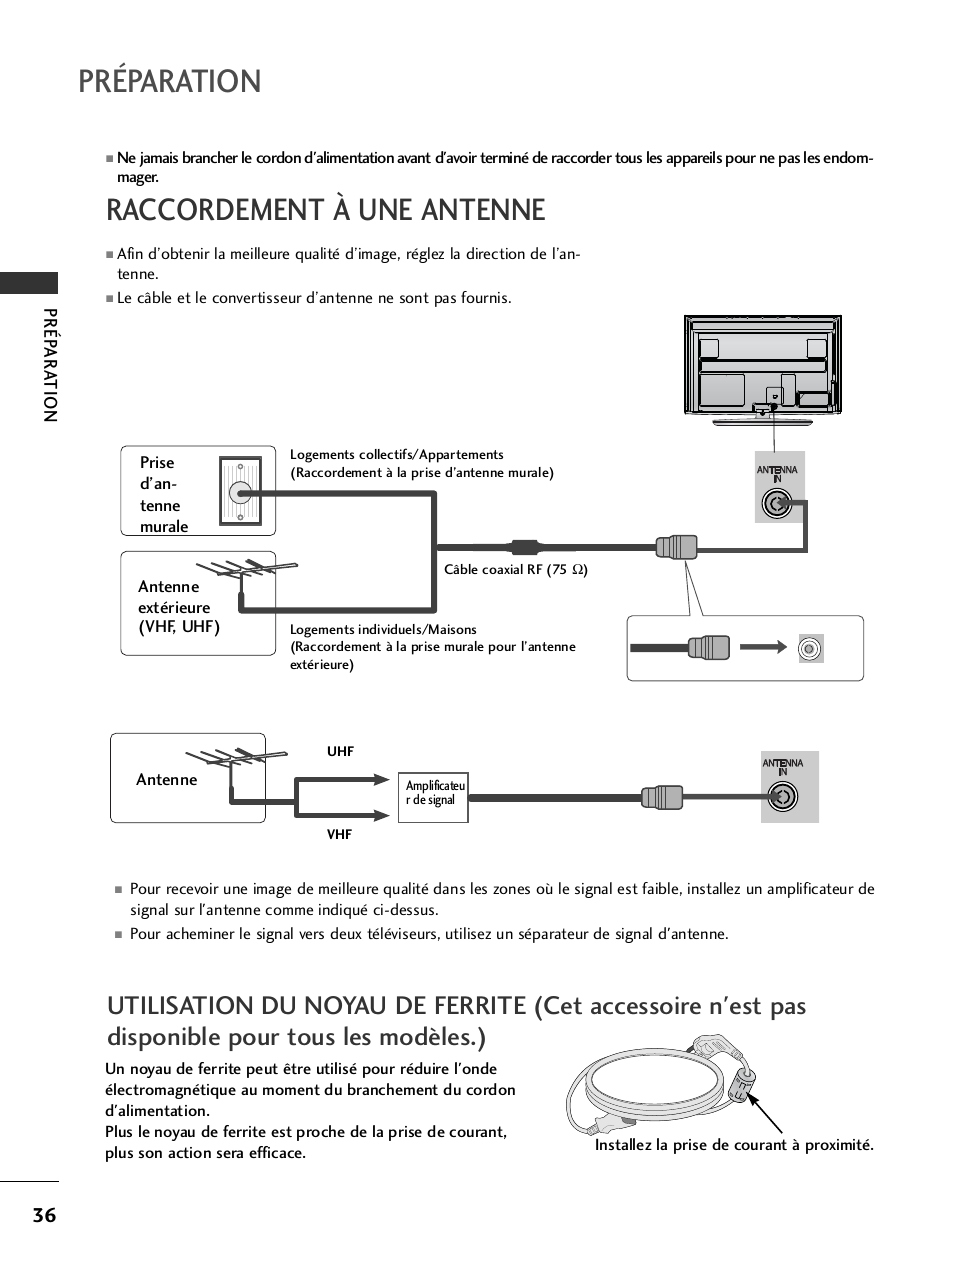 Raccordement à une antenne, Préparation | LG 32LH40 Manuel d'utilisation | Page 38 / 180